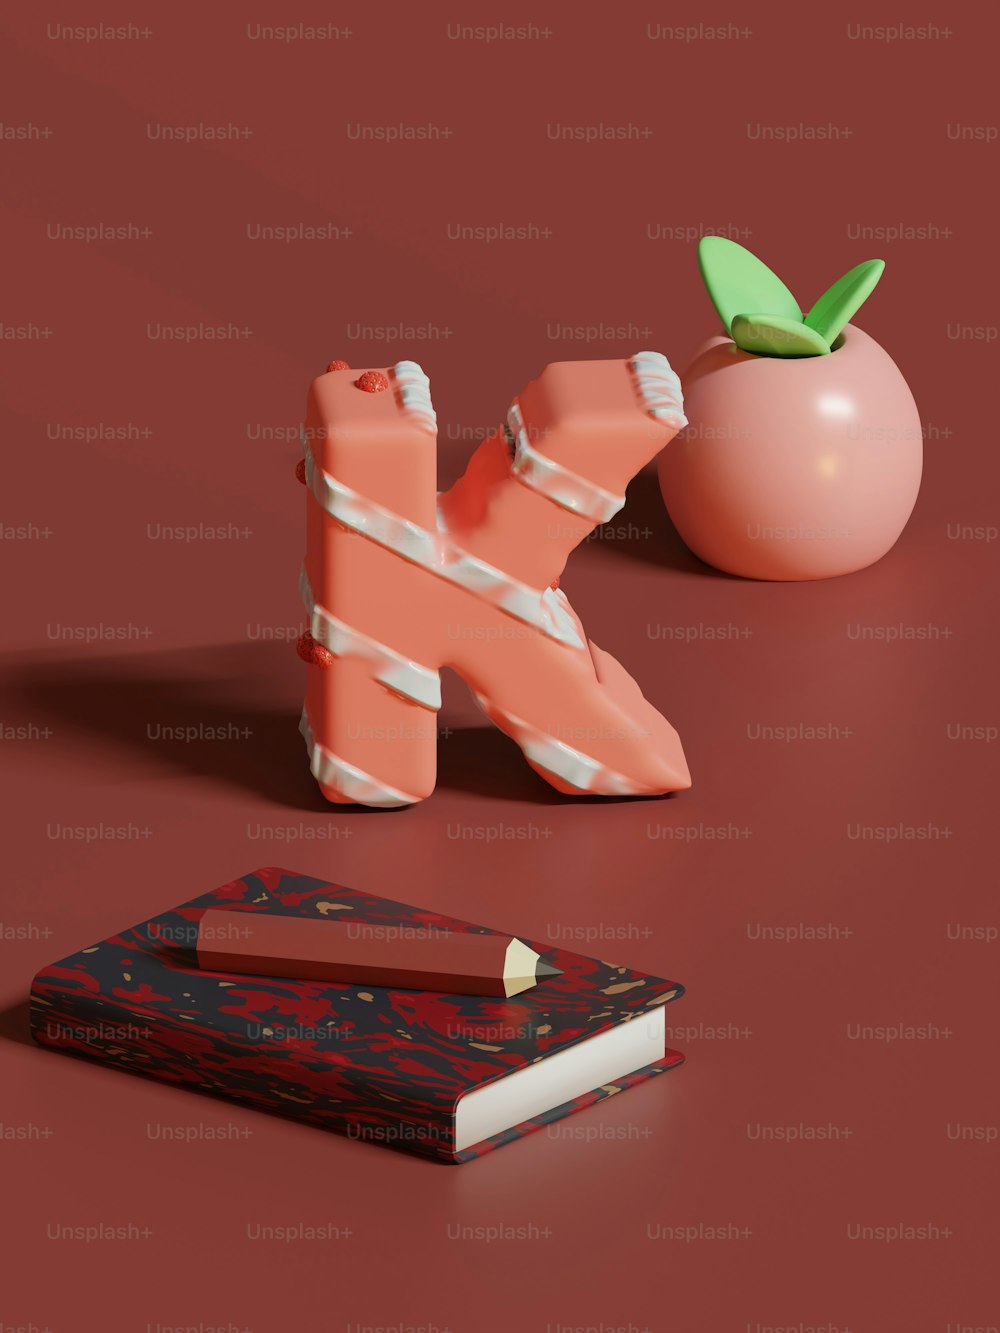 Un livre, un porte-crayon et une pomme reposent sur une surface rouge